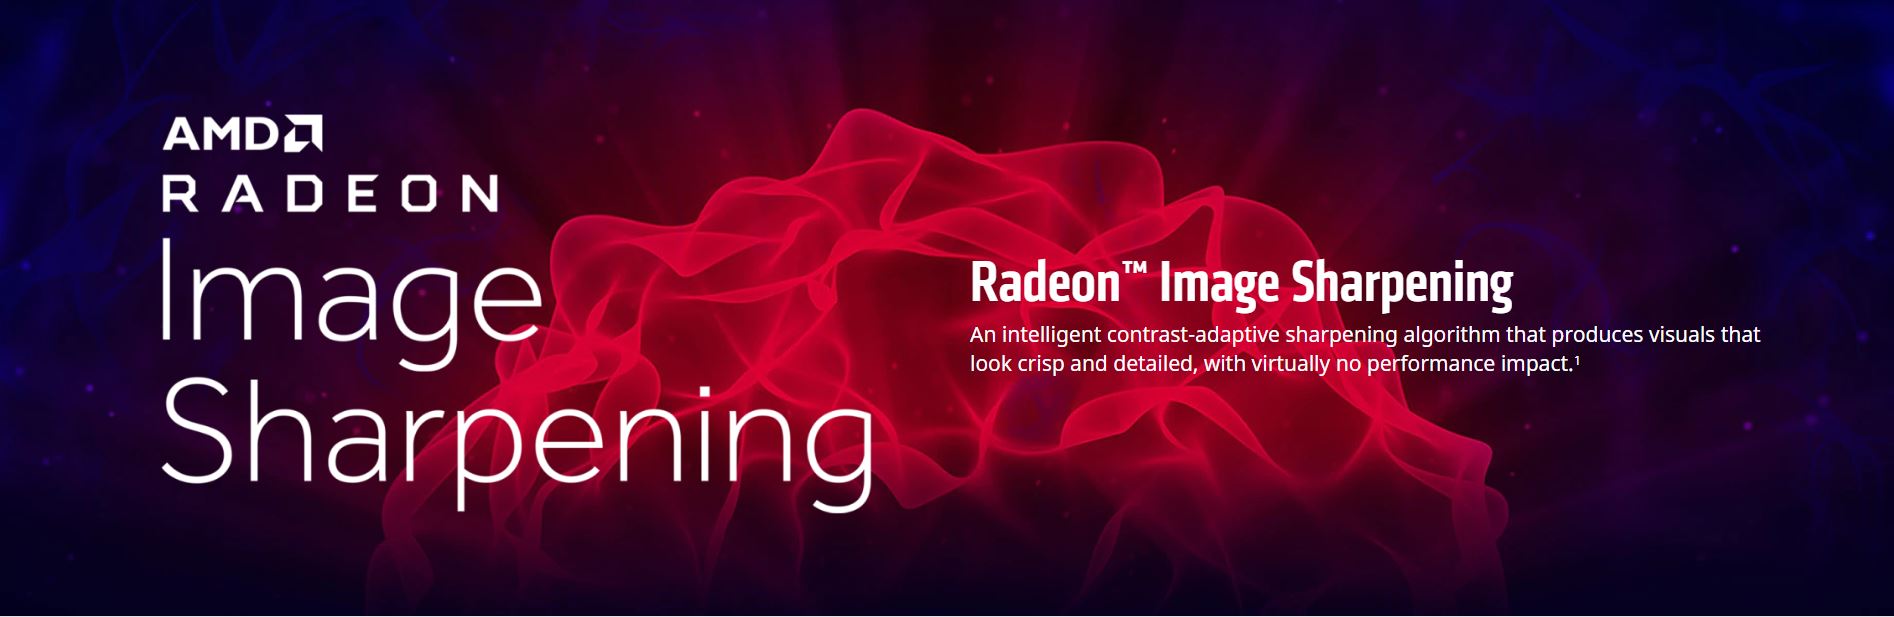 Risorsa grafica - foto, screenshot o immagine in genere - relativa ai contenuti pubblicati da amdzone.it | Nome immagine: news29983_Radeon-Image-Sharpening_1.JPG